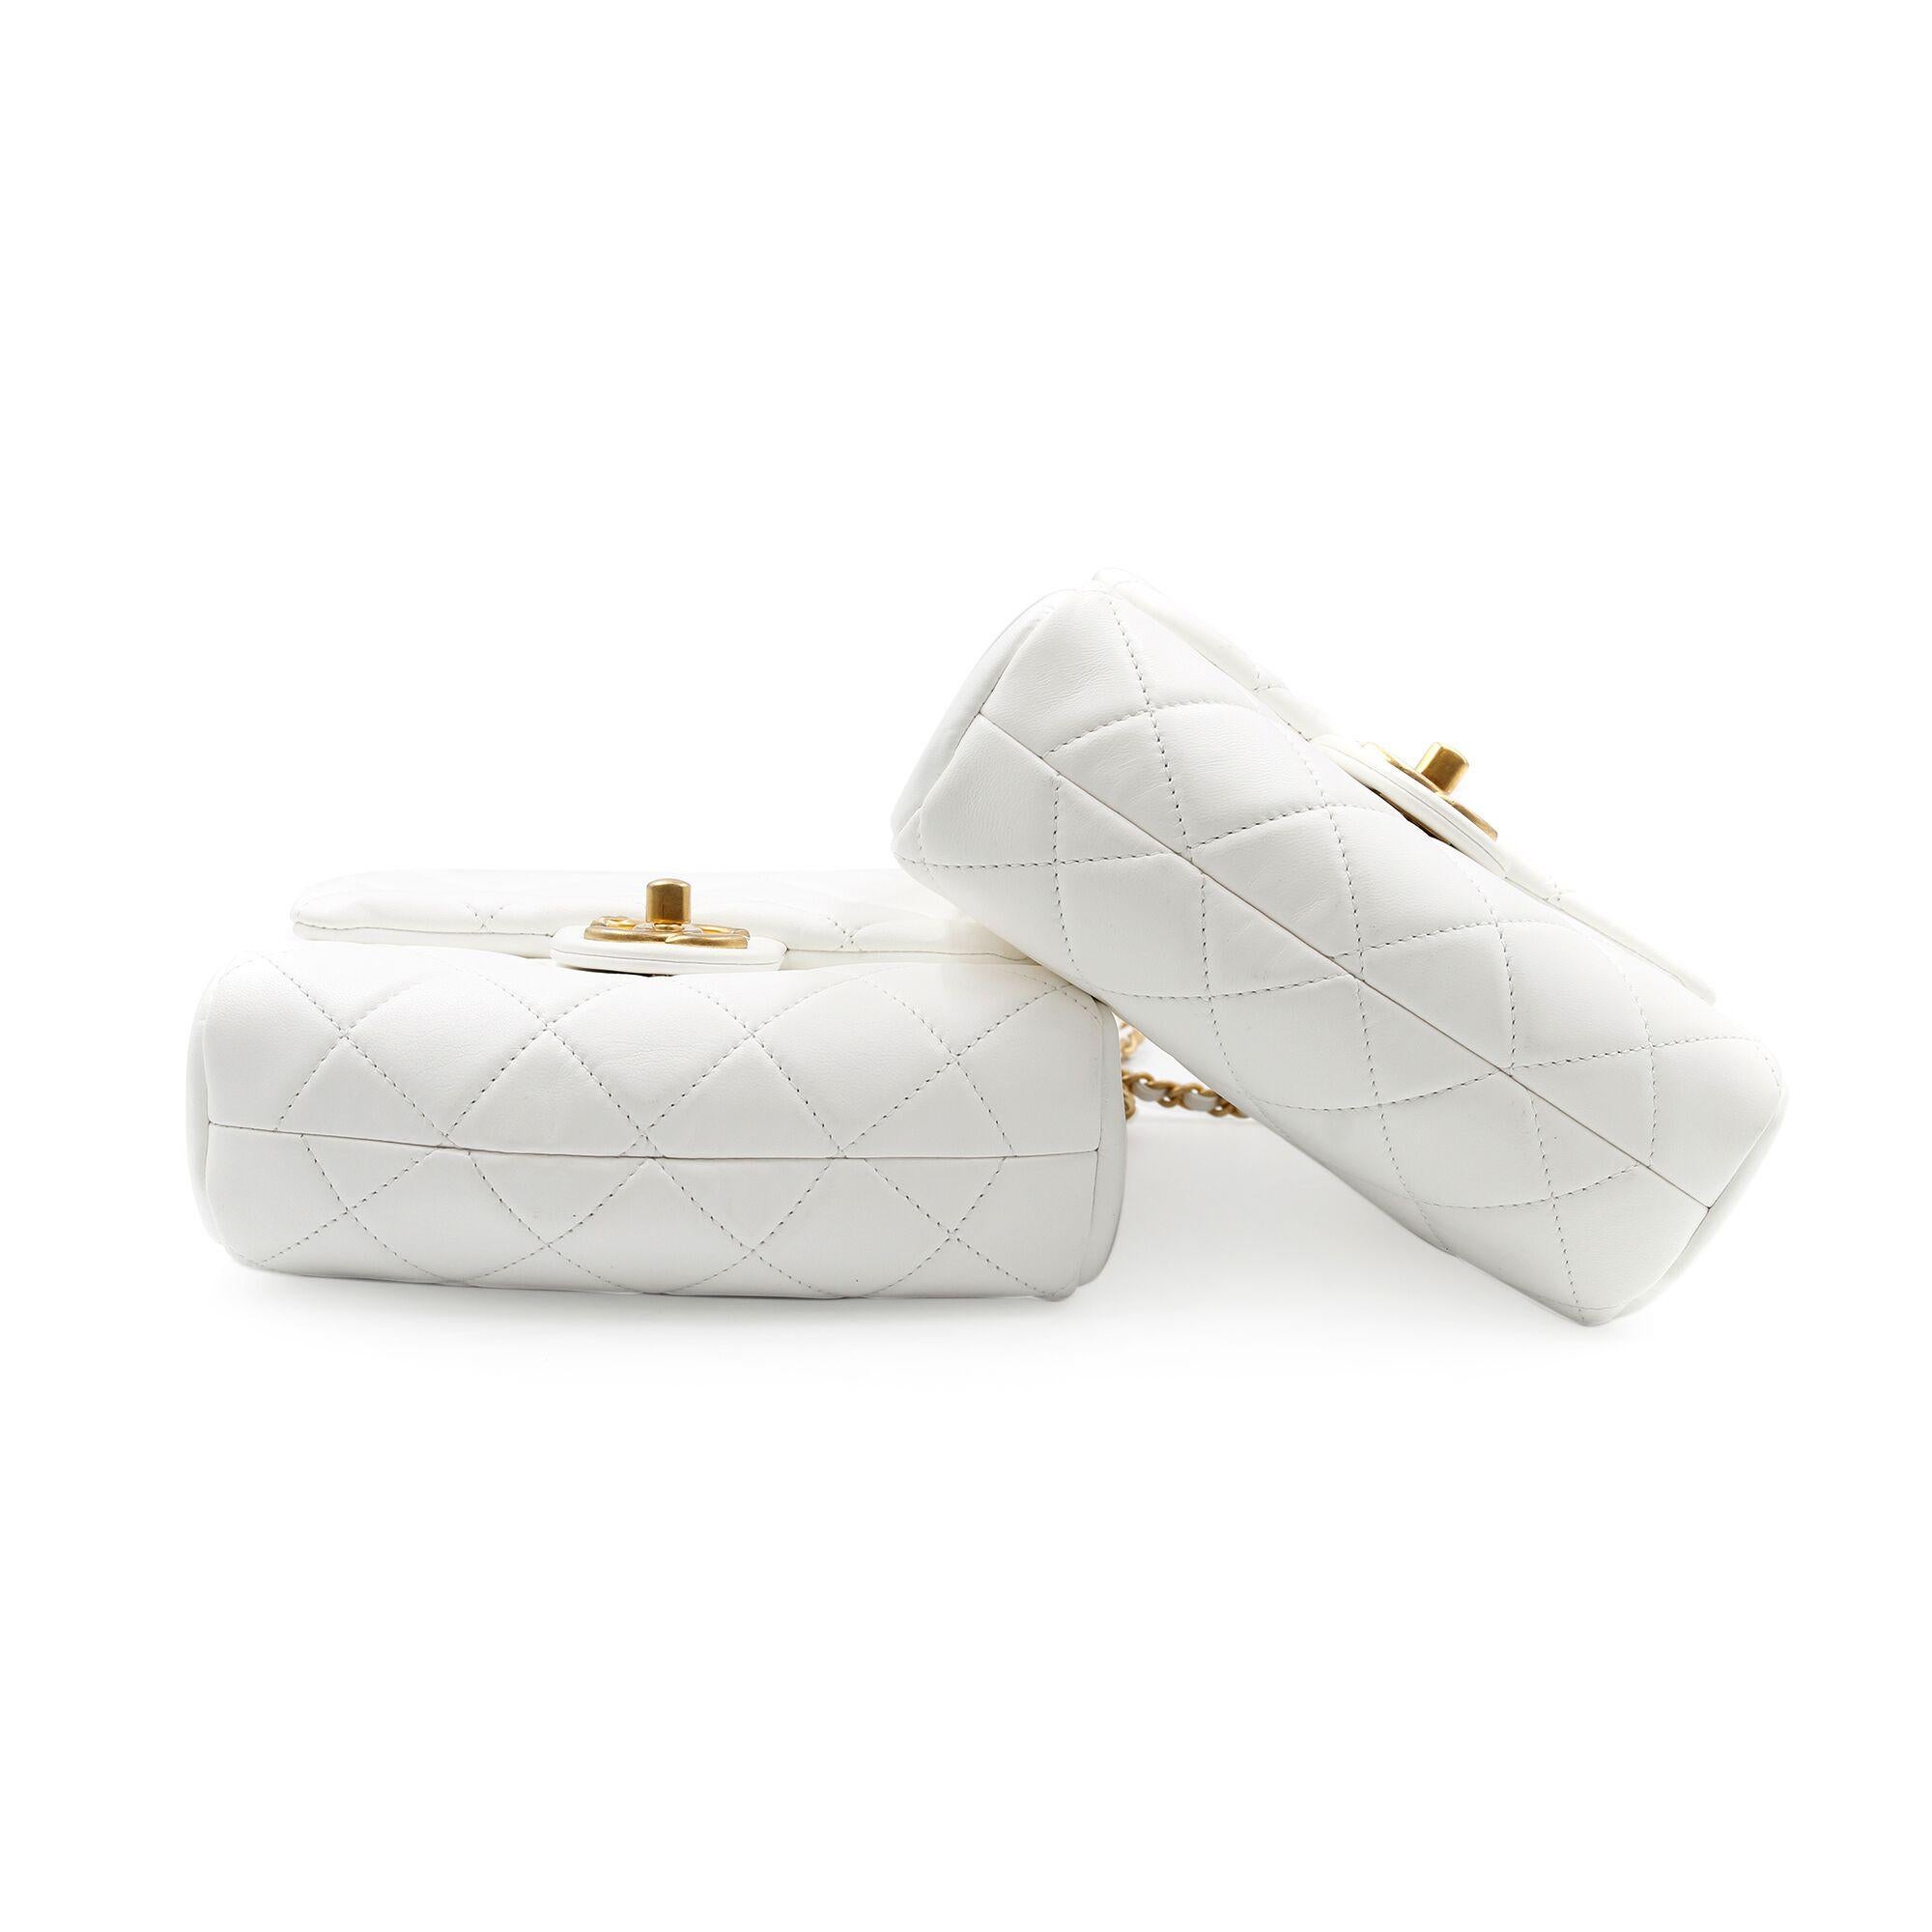 Women's Chanel White Lambskin Gold Tone Metal Side Packs Cross-body Bags